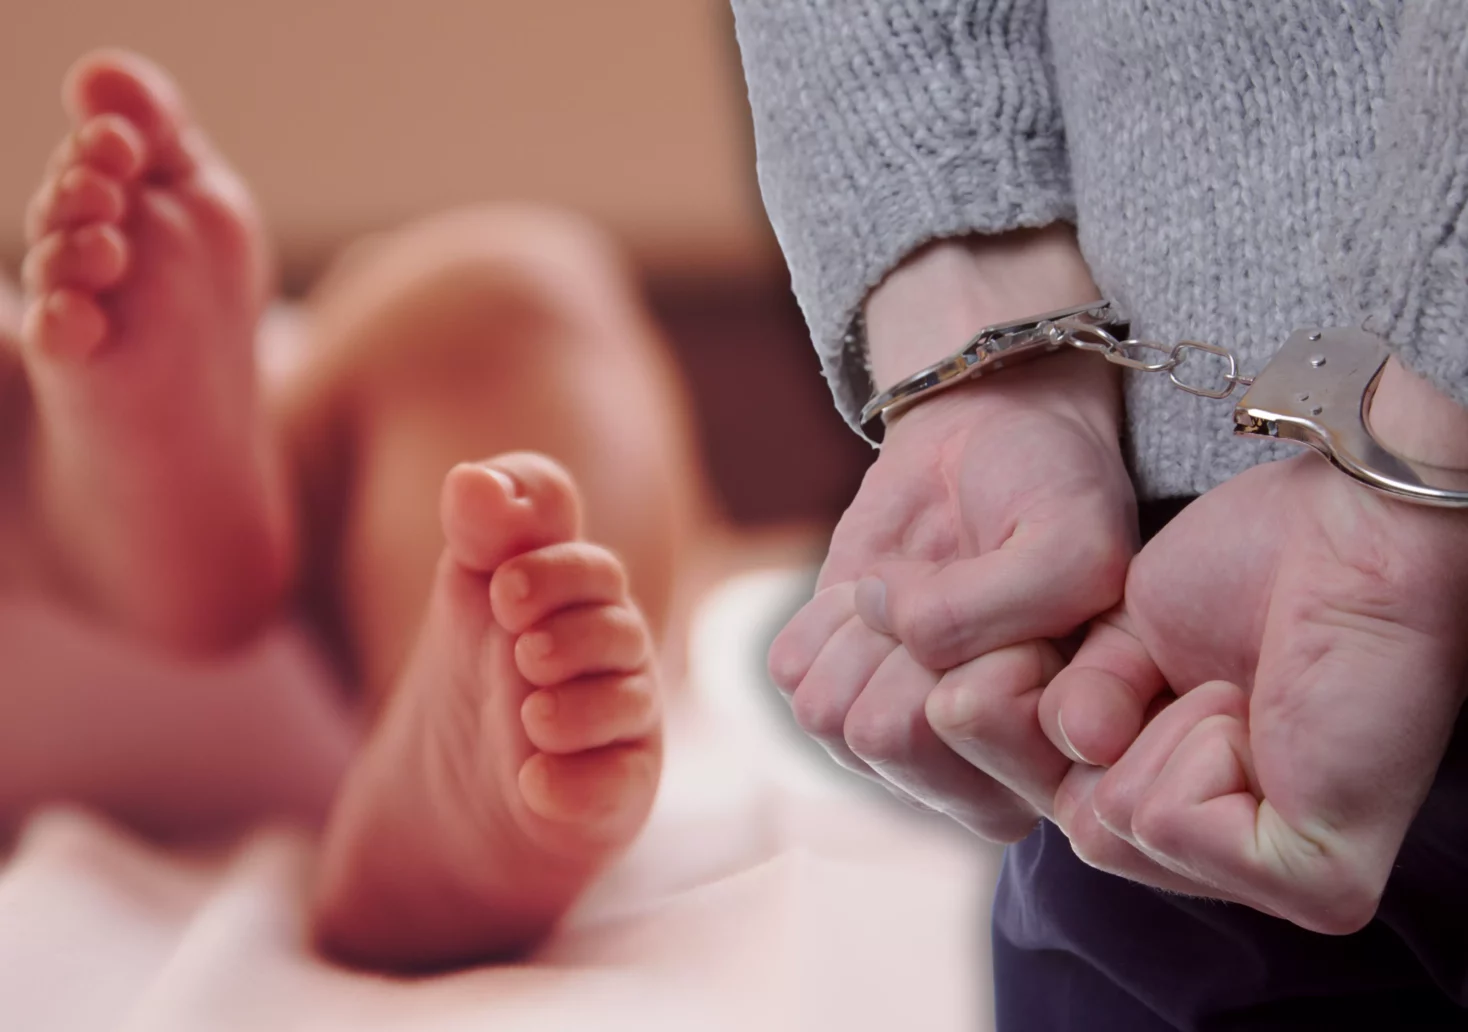 Eine Bildmontage auf 5min.at zeigt die Füße eines Babys und eine Person in Handschellen.